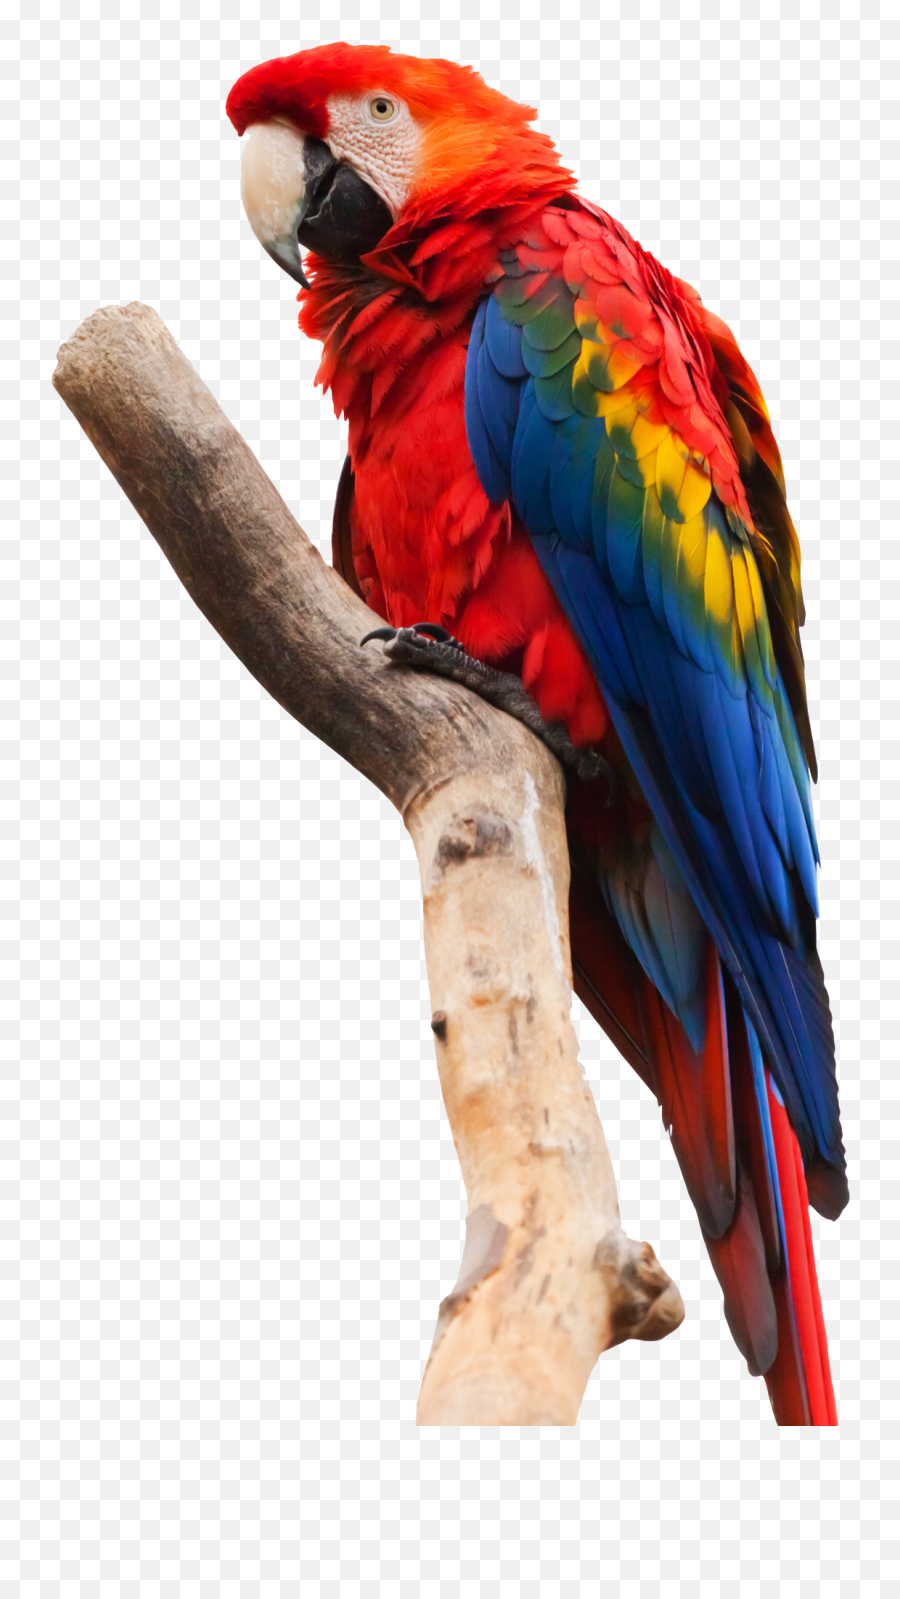 Parrot Png Images - Parrot Png,Parrot Png